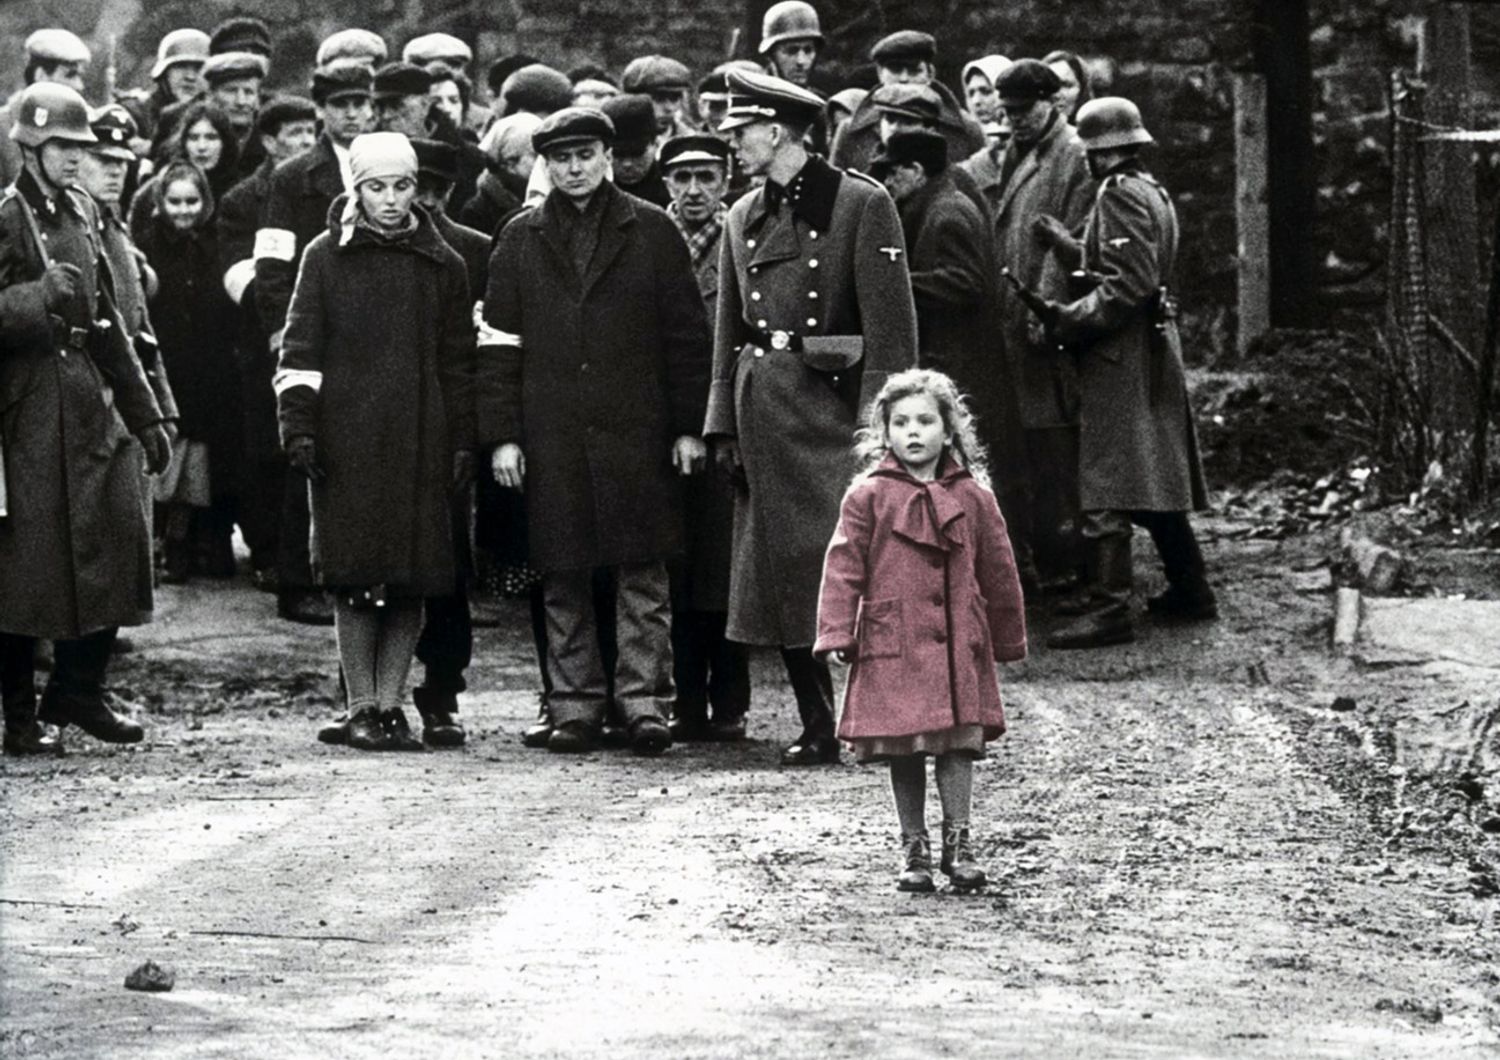 La bambina con il cappottino rosso del film 'Schindler's List'